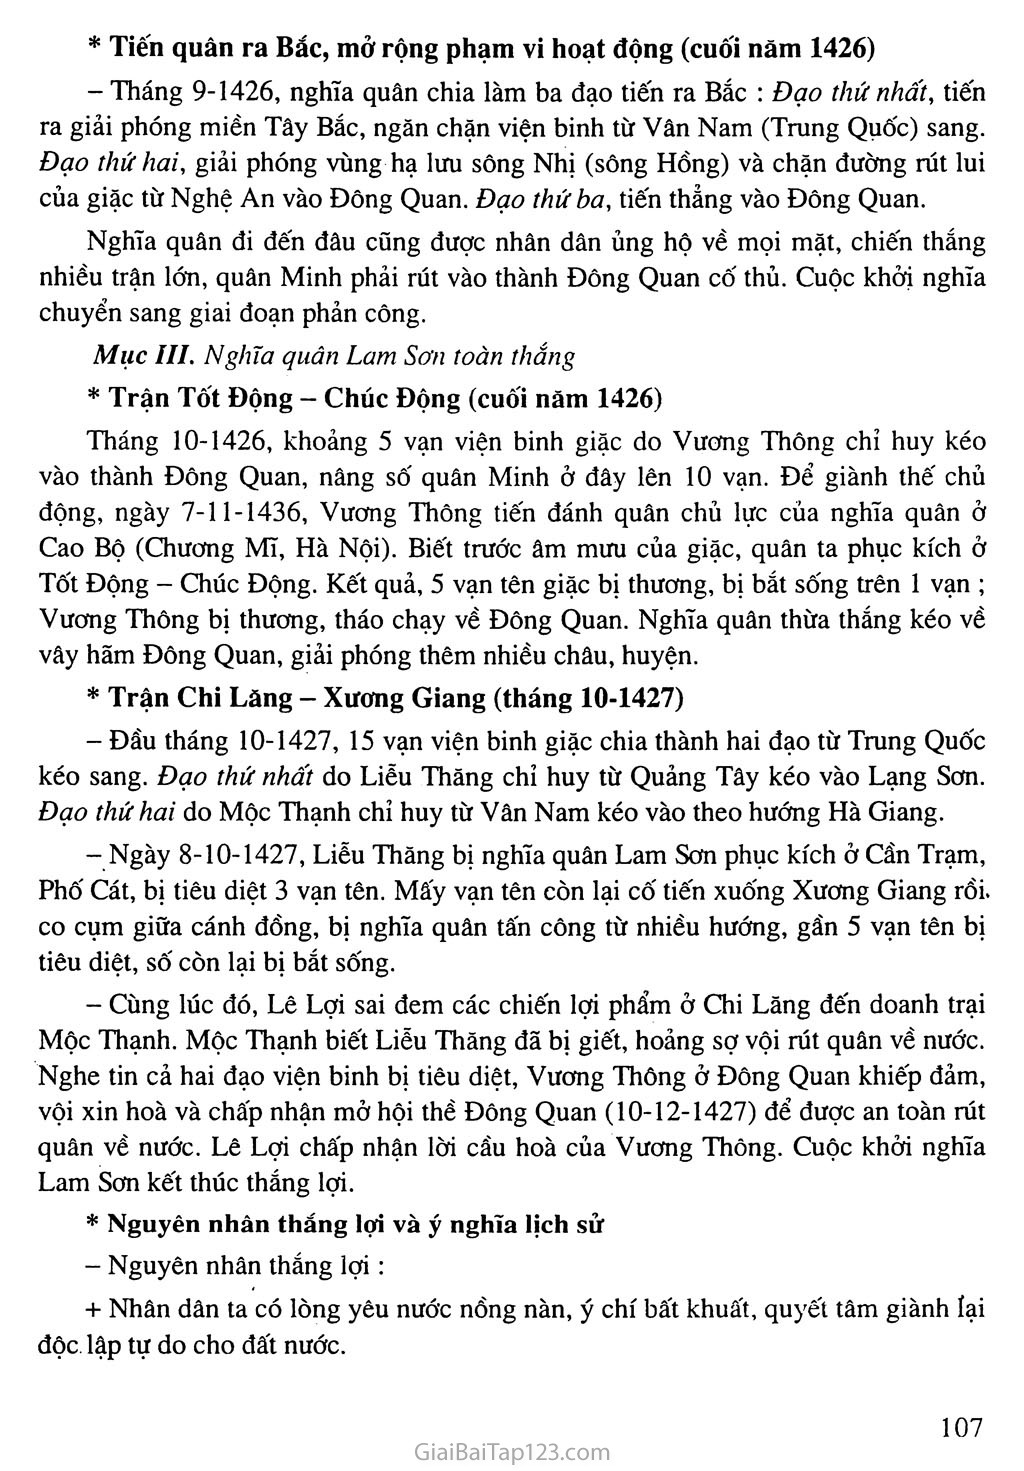 Bài 19: Cuộc khởi nghĩa Lam Sơn (1418 - 1427) trang 3